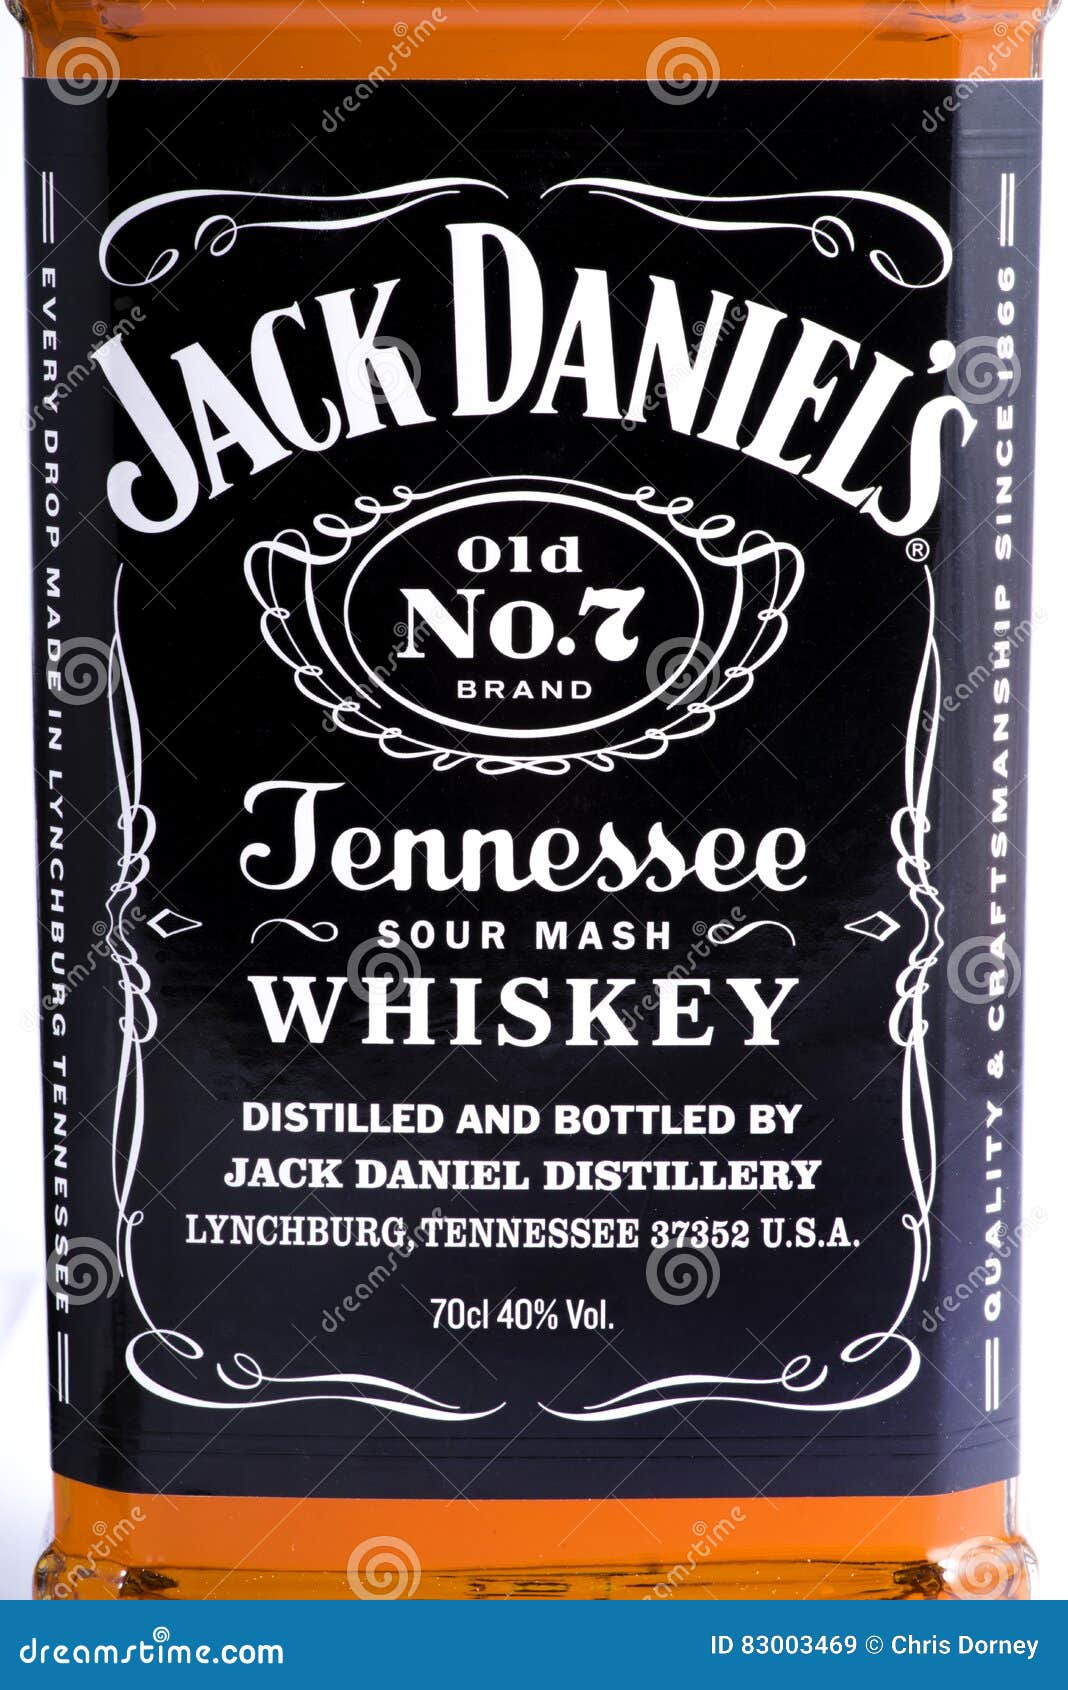 Jack Daniels Bottle Images  Free Download on Freepik